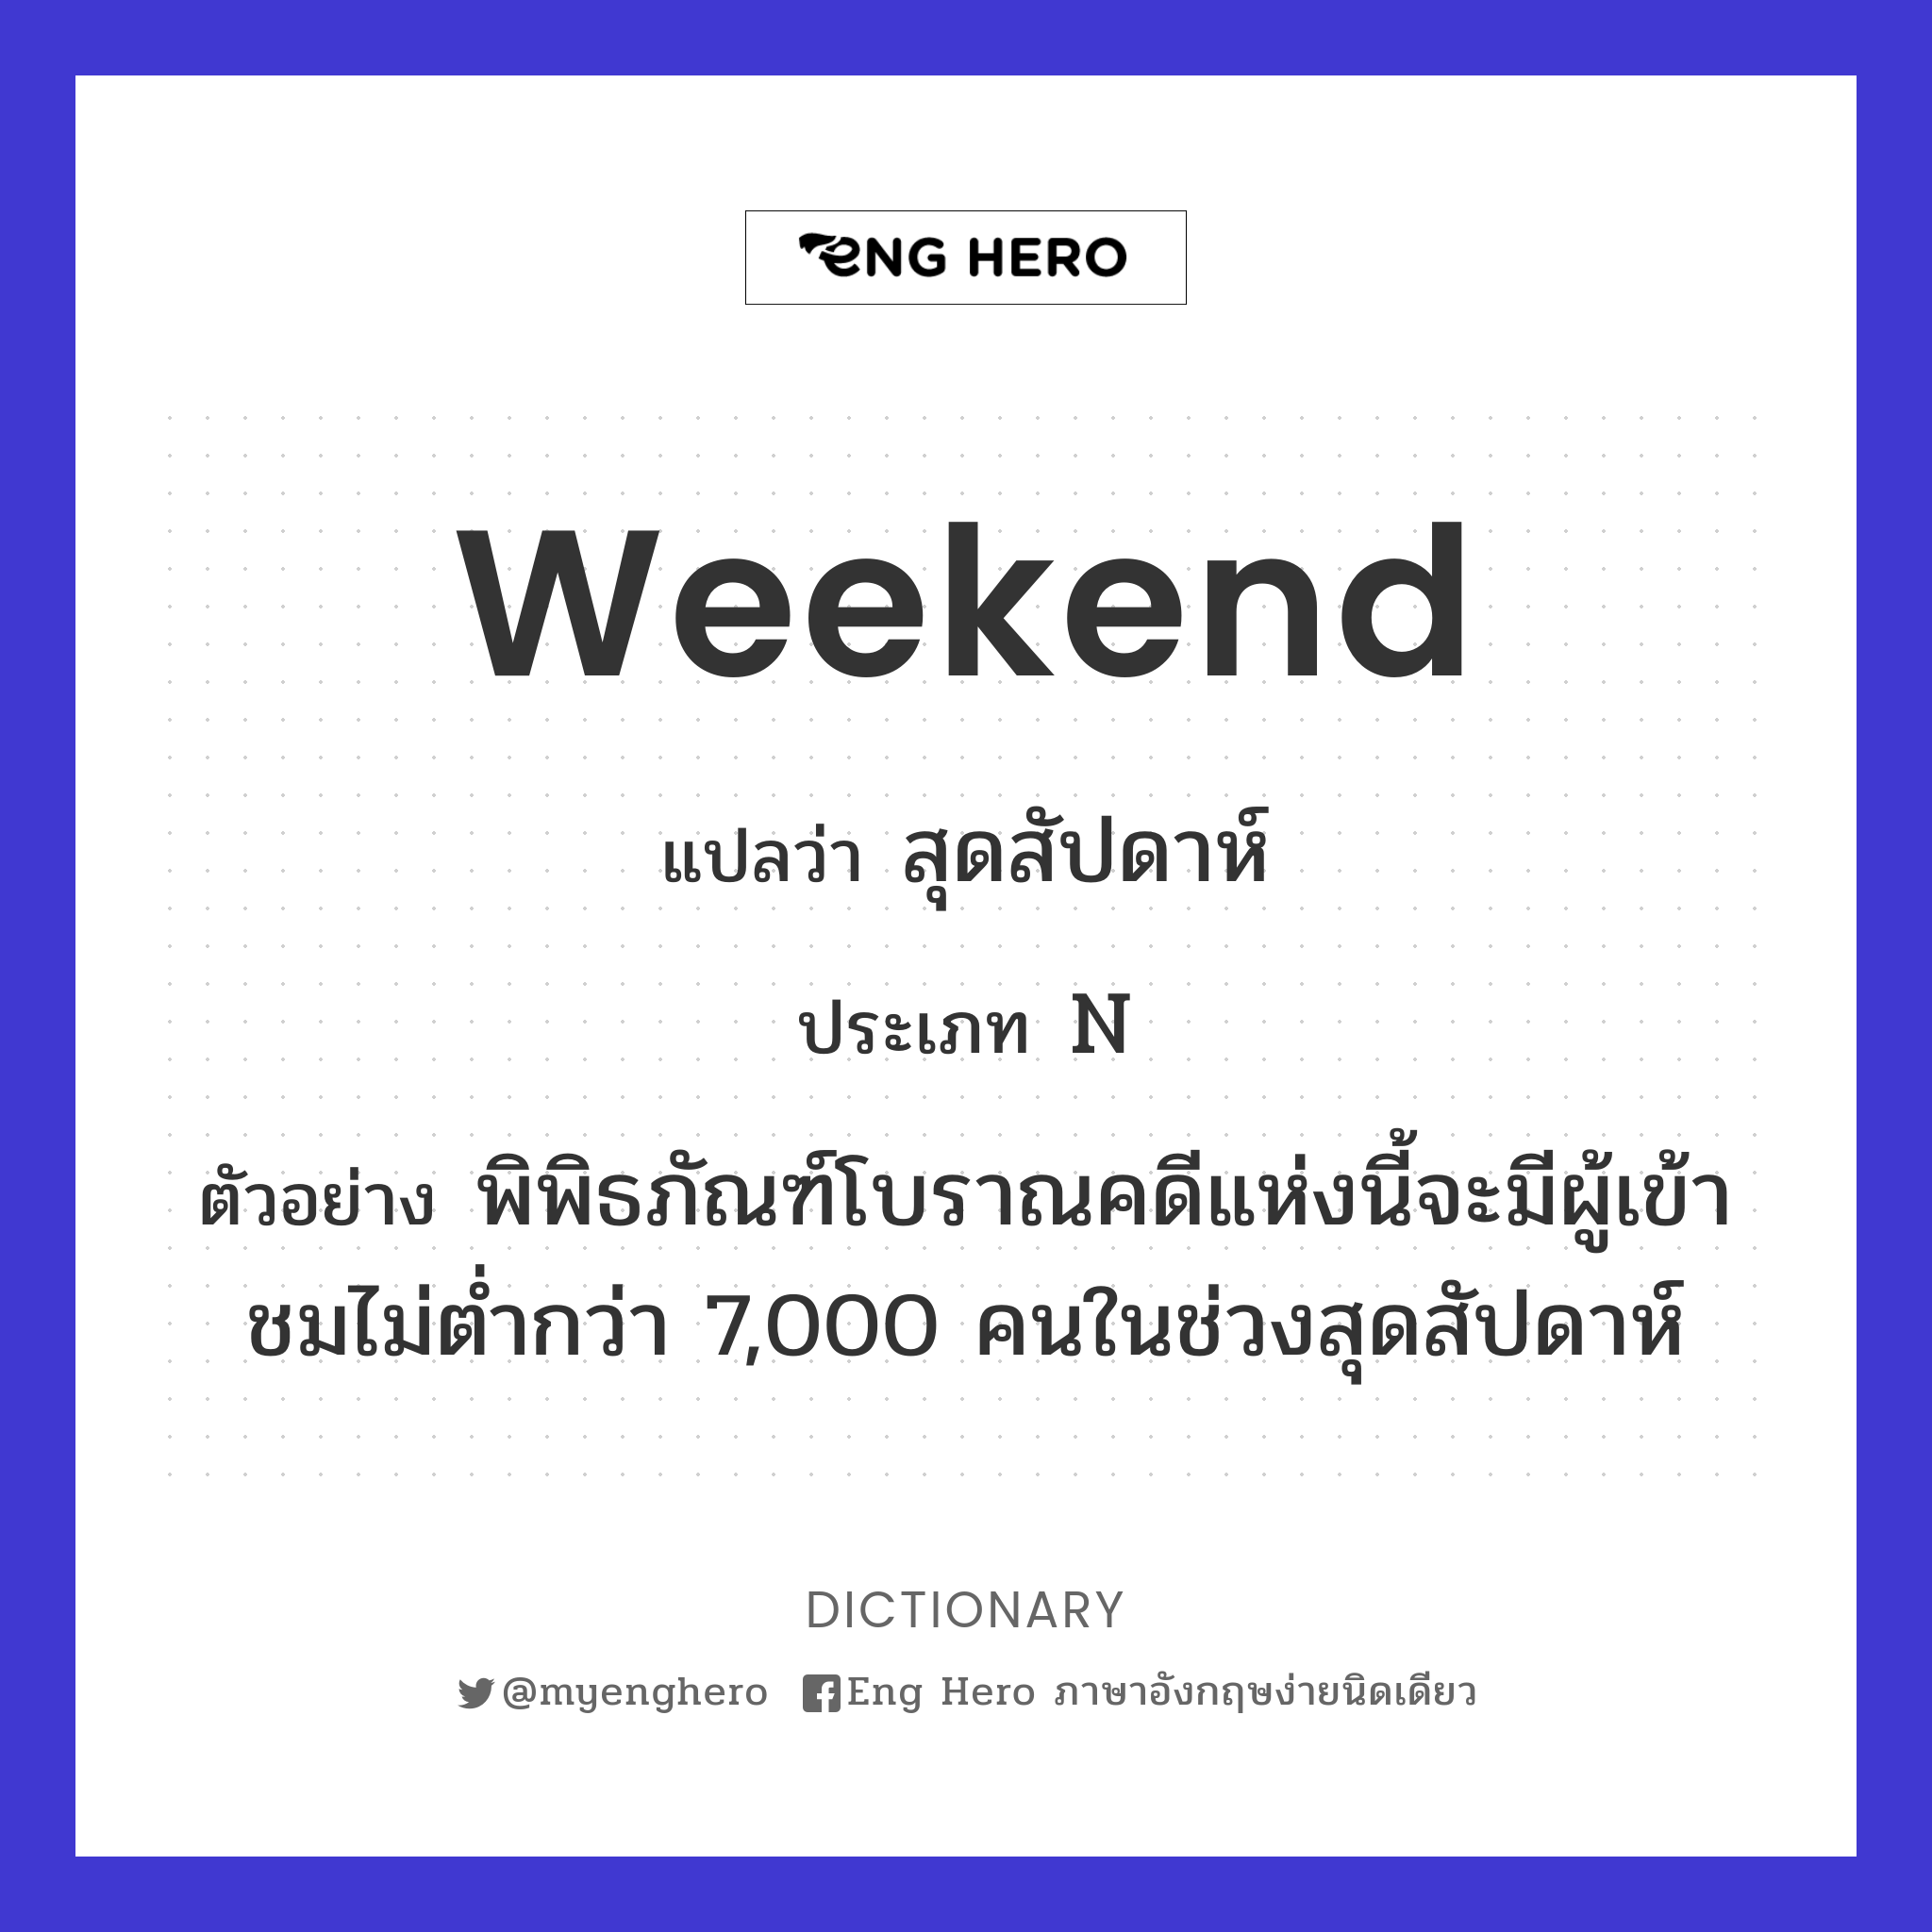 Weekend แปลว่า วันสุดสัปดาห์, ช่วงเวลาตั้งแต่เย็นวันศุกร์ถึงเย็นวันอาทิตย์  | Eng Hero เรียนภาษาอังกฤษ ออนไลน์ ฟรี